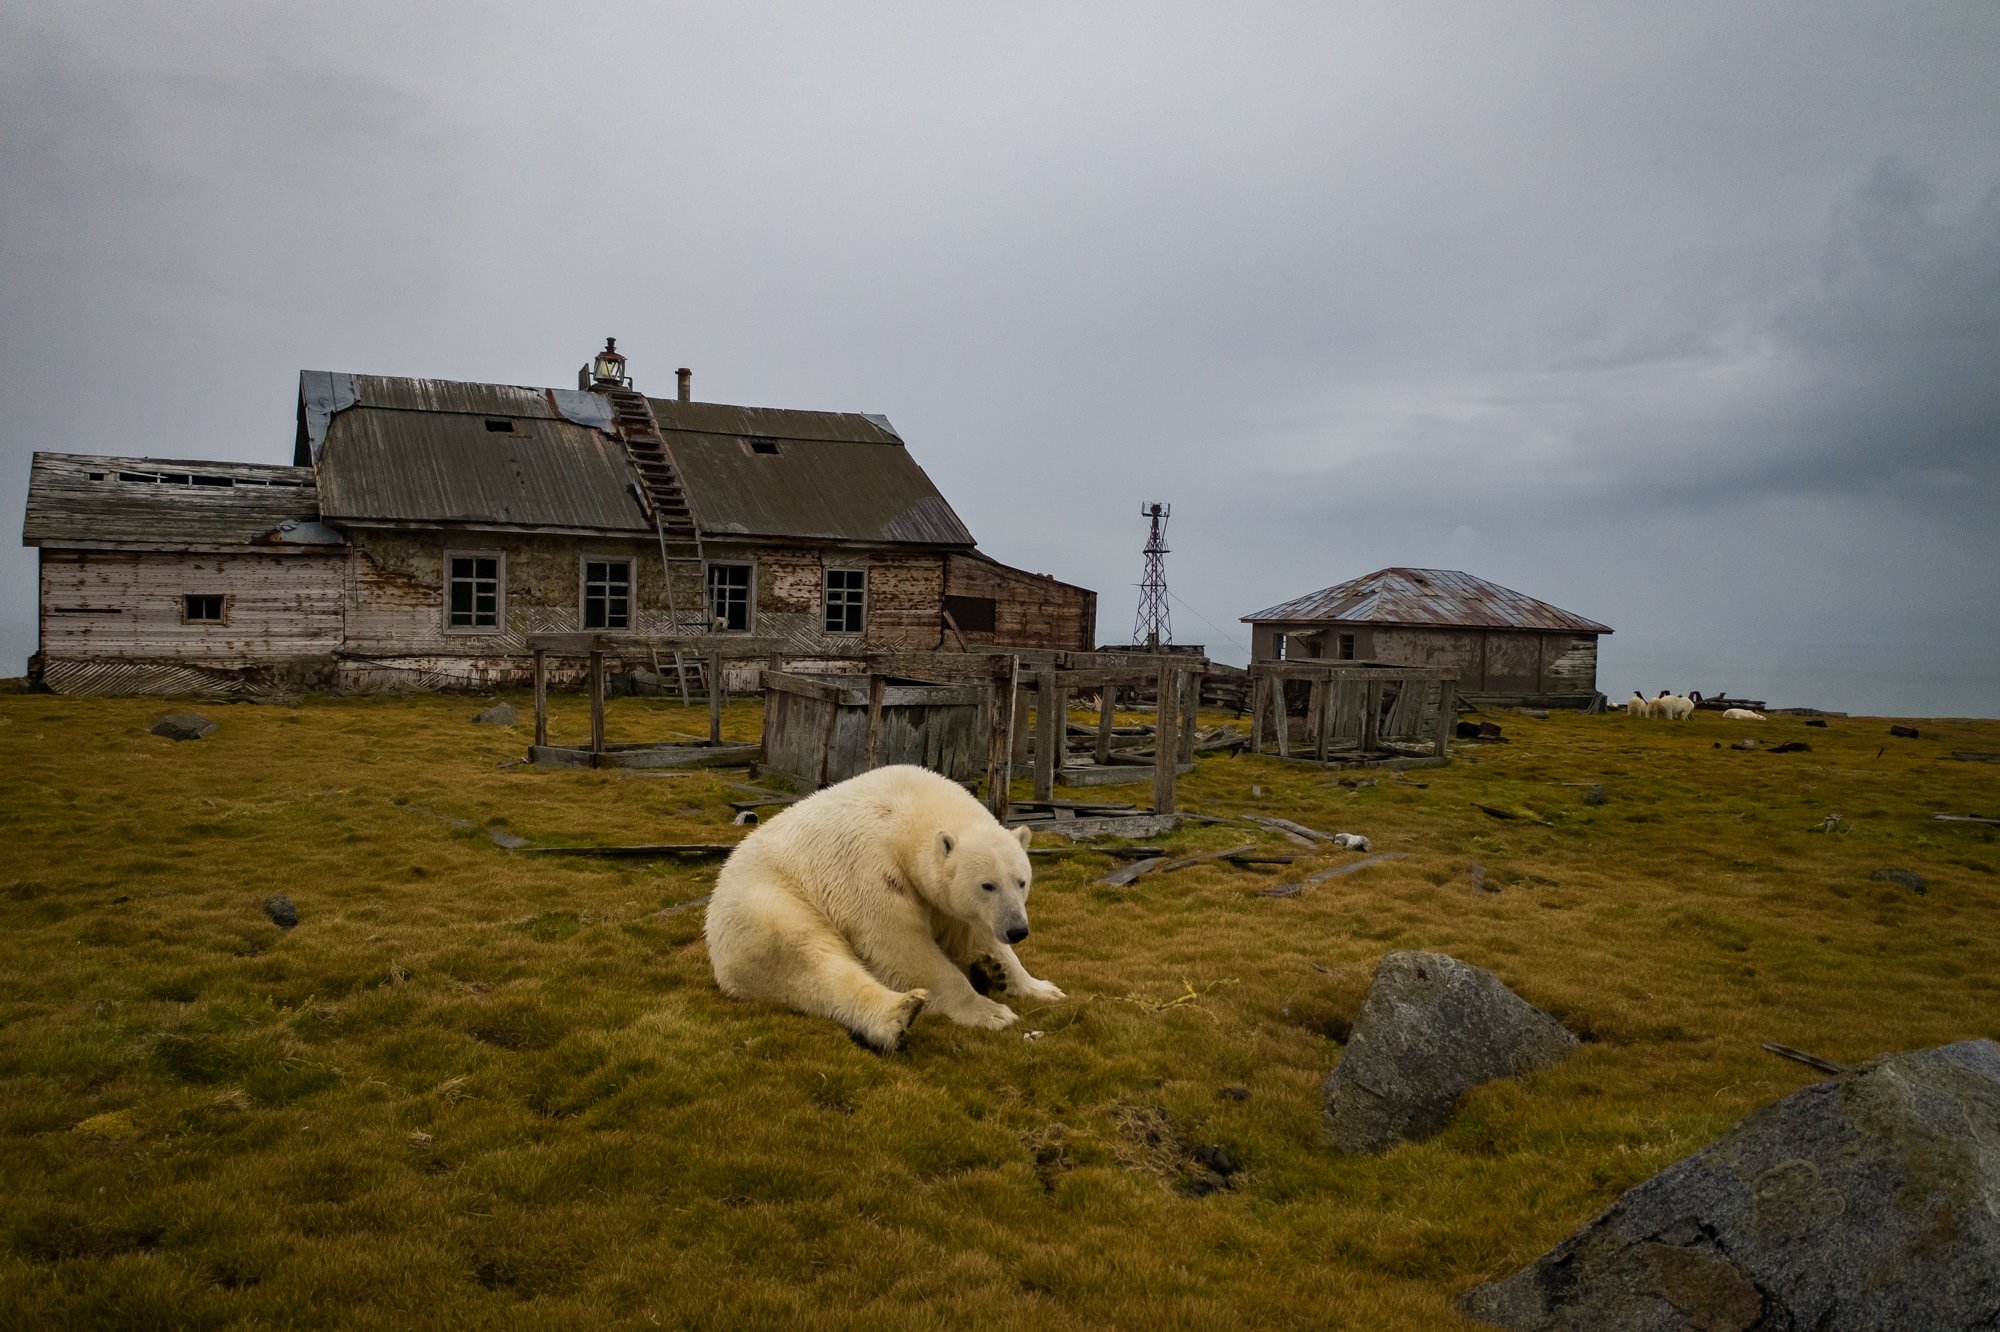 polar bear sitting in grass near abandoned house